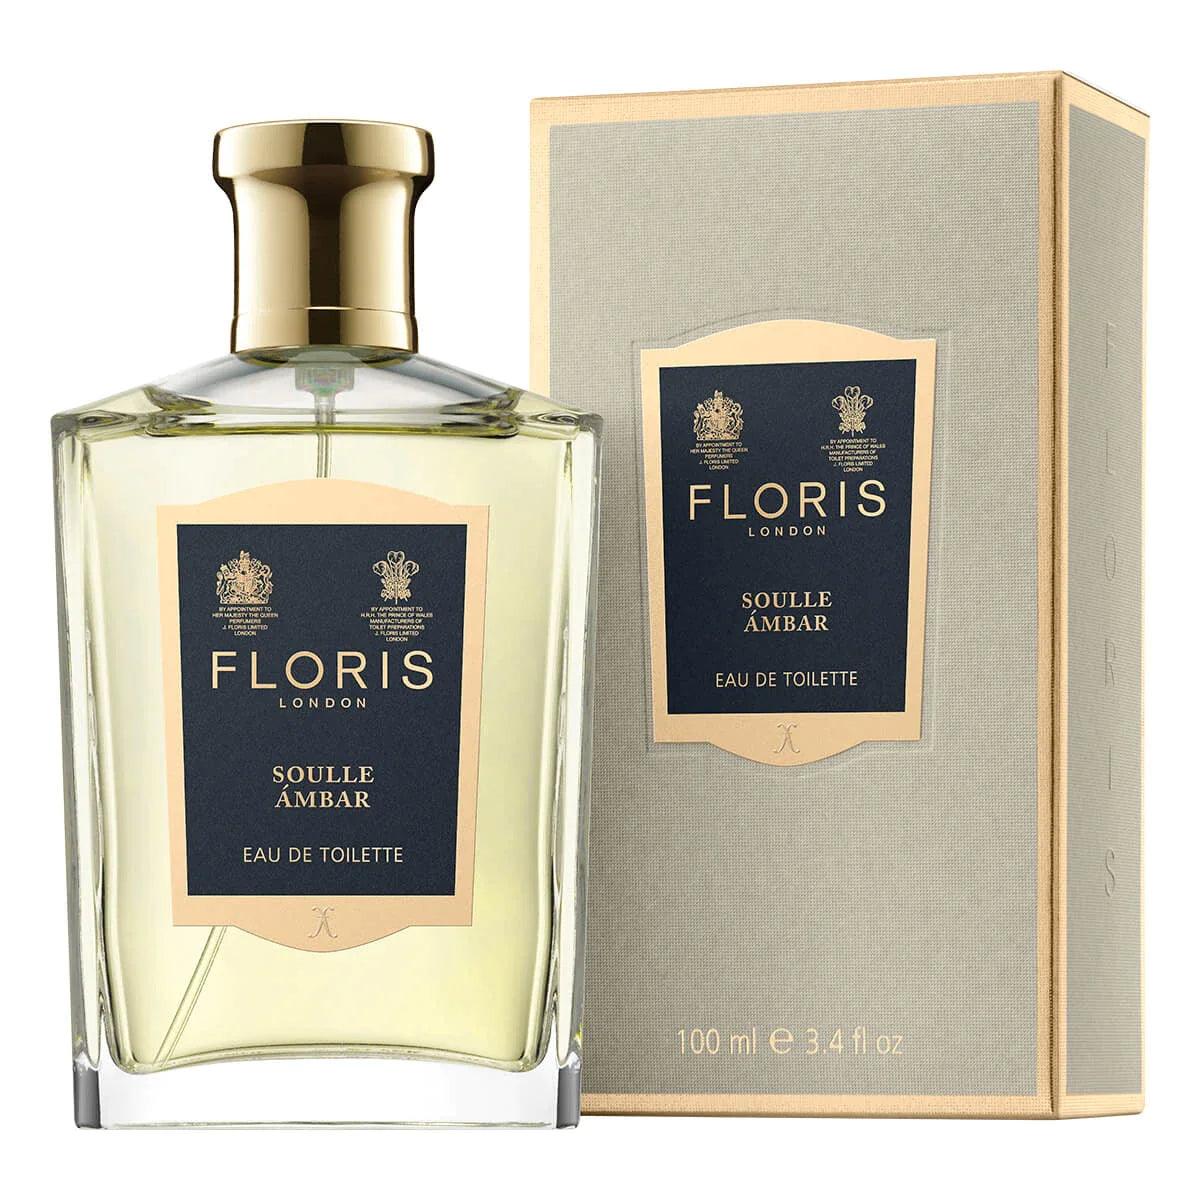 Floris London Floris Soulle Ambar, Eau de Toilette, 50 ml | Parfyme | Floris London | JK SHOP | JK Barber og herre frisør | Lavepriser | Best